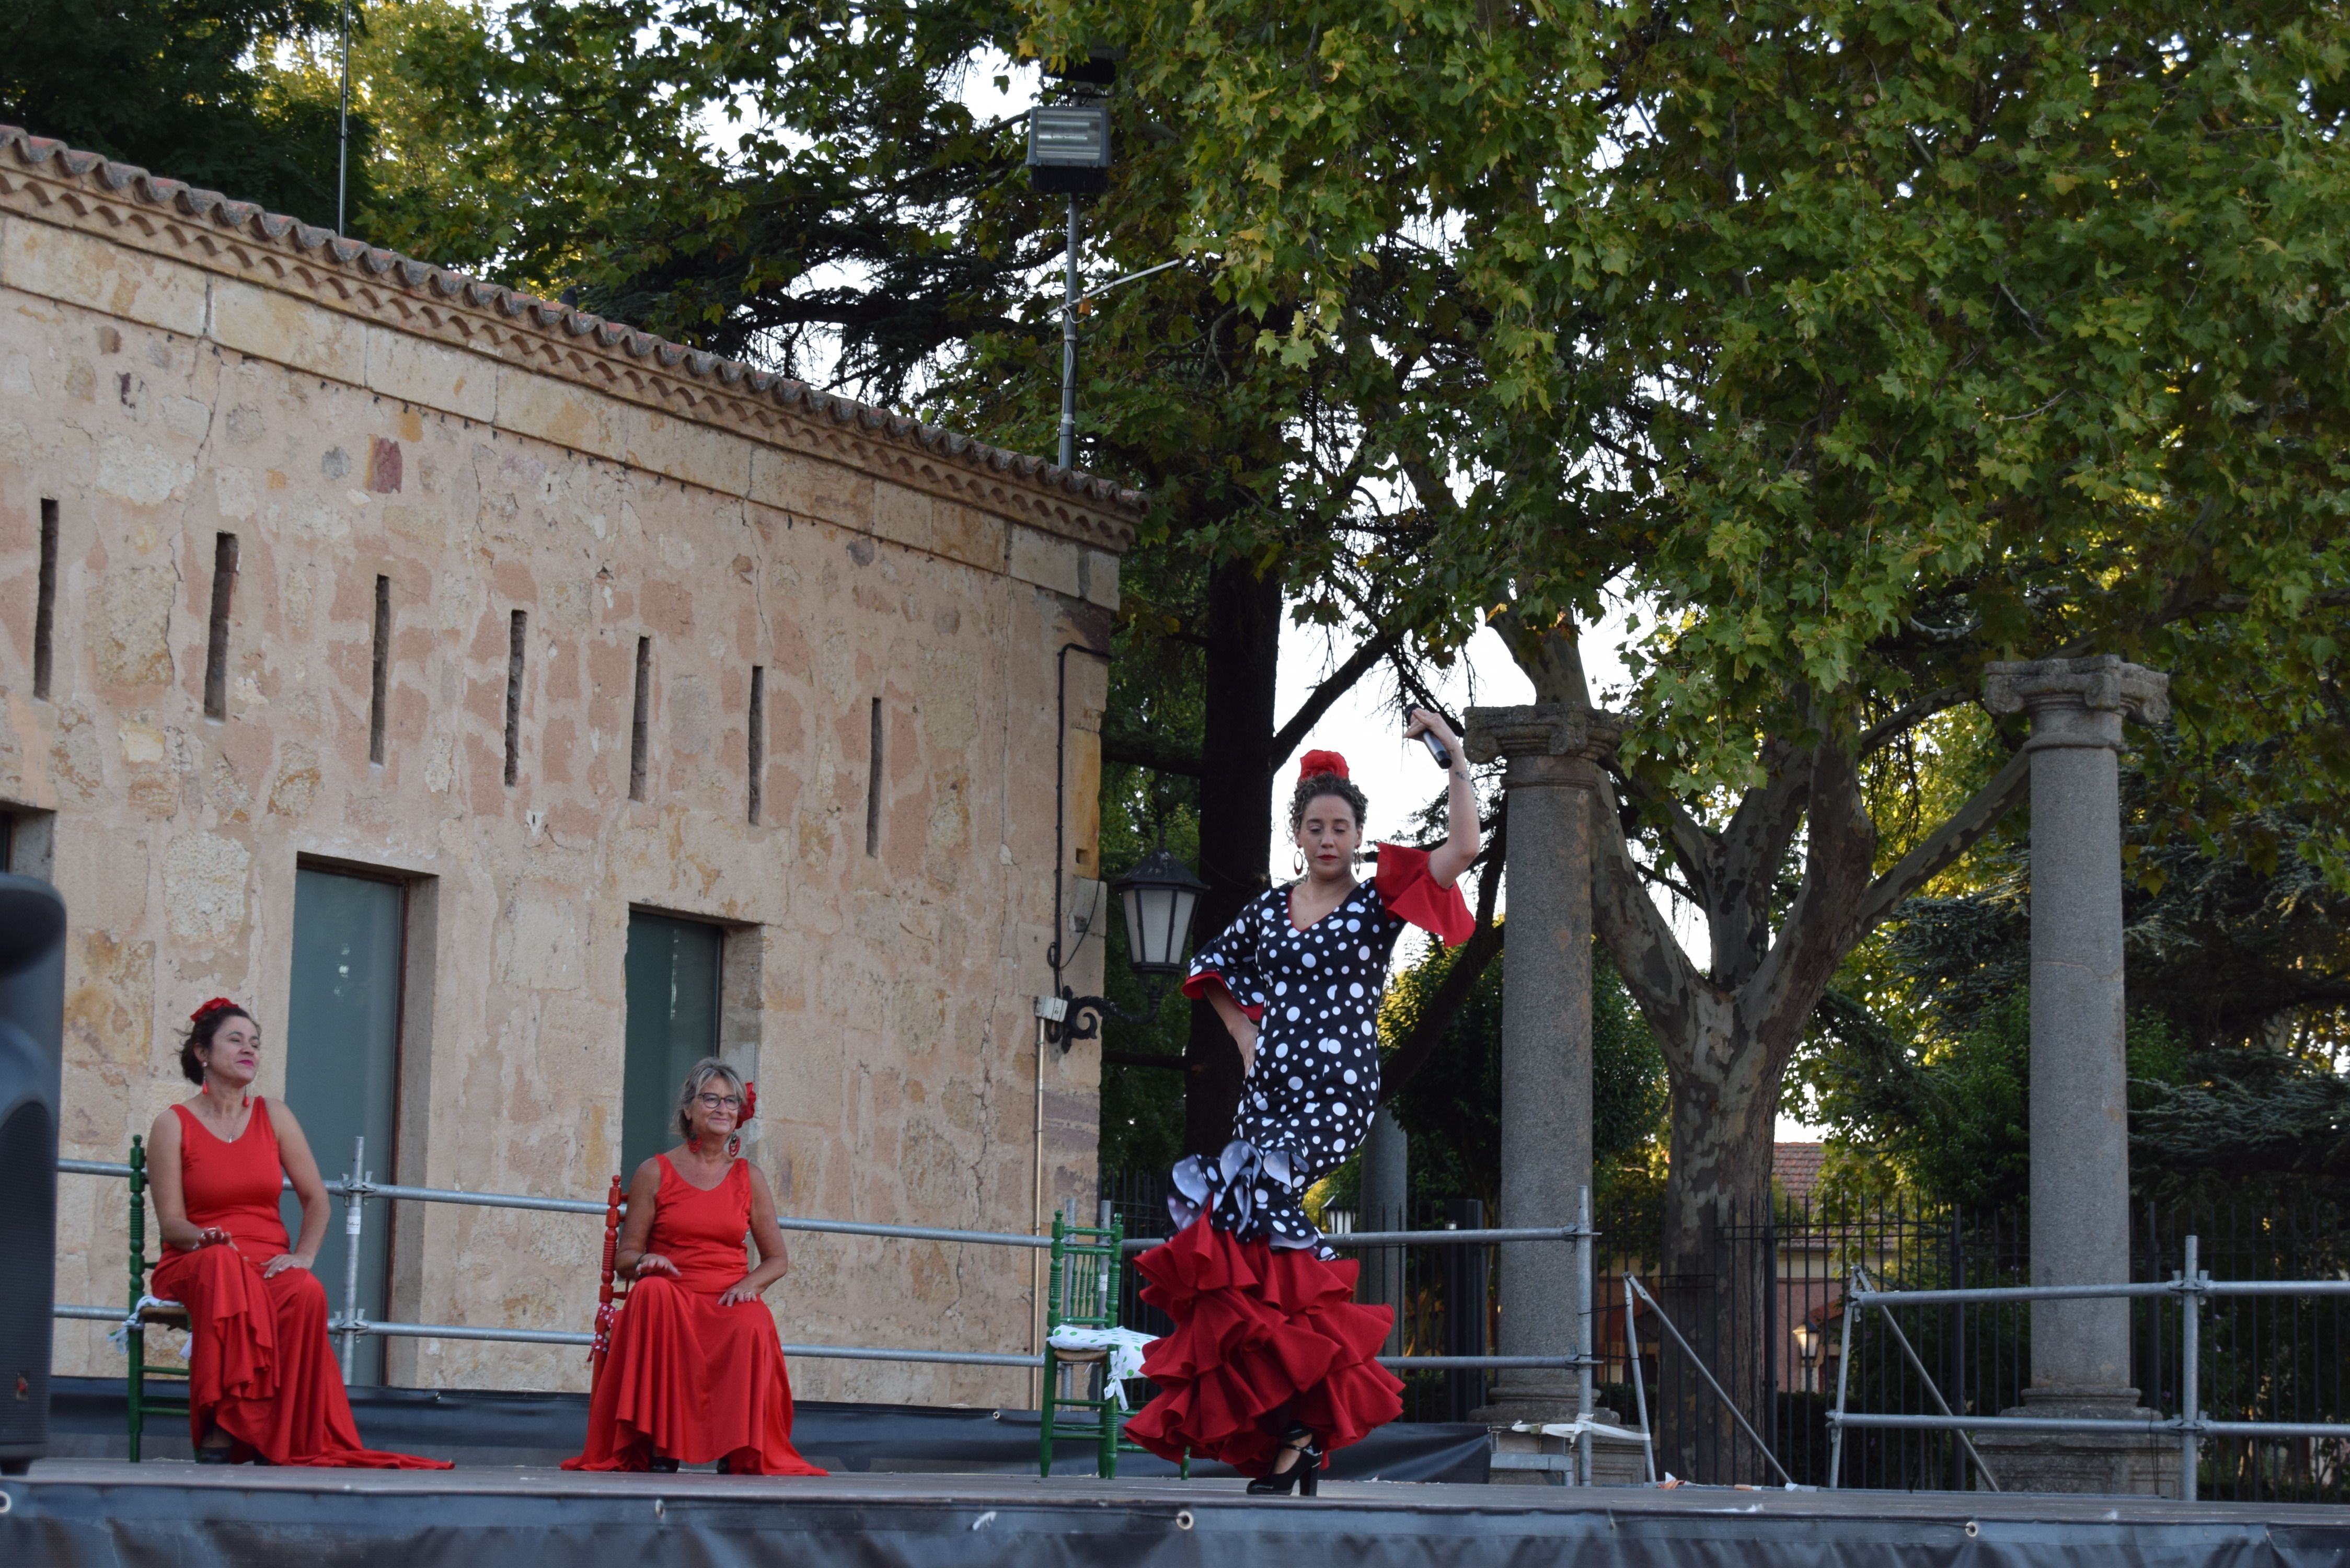 Añoranza despliega su arte con el flamenco (8)